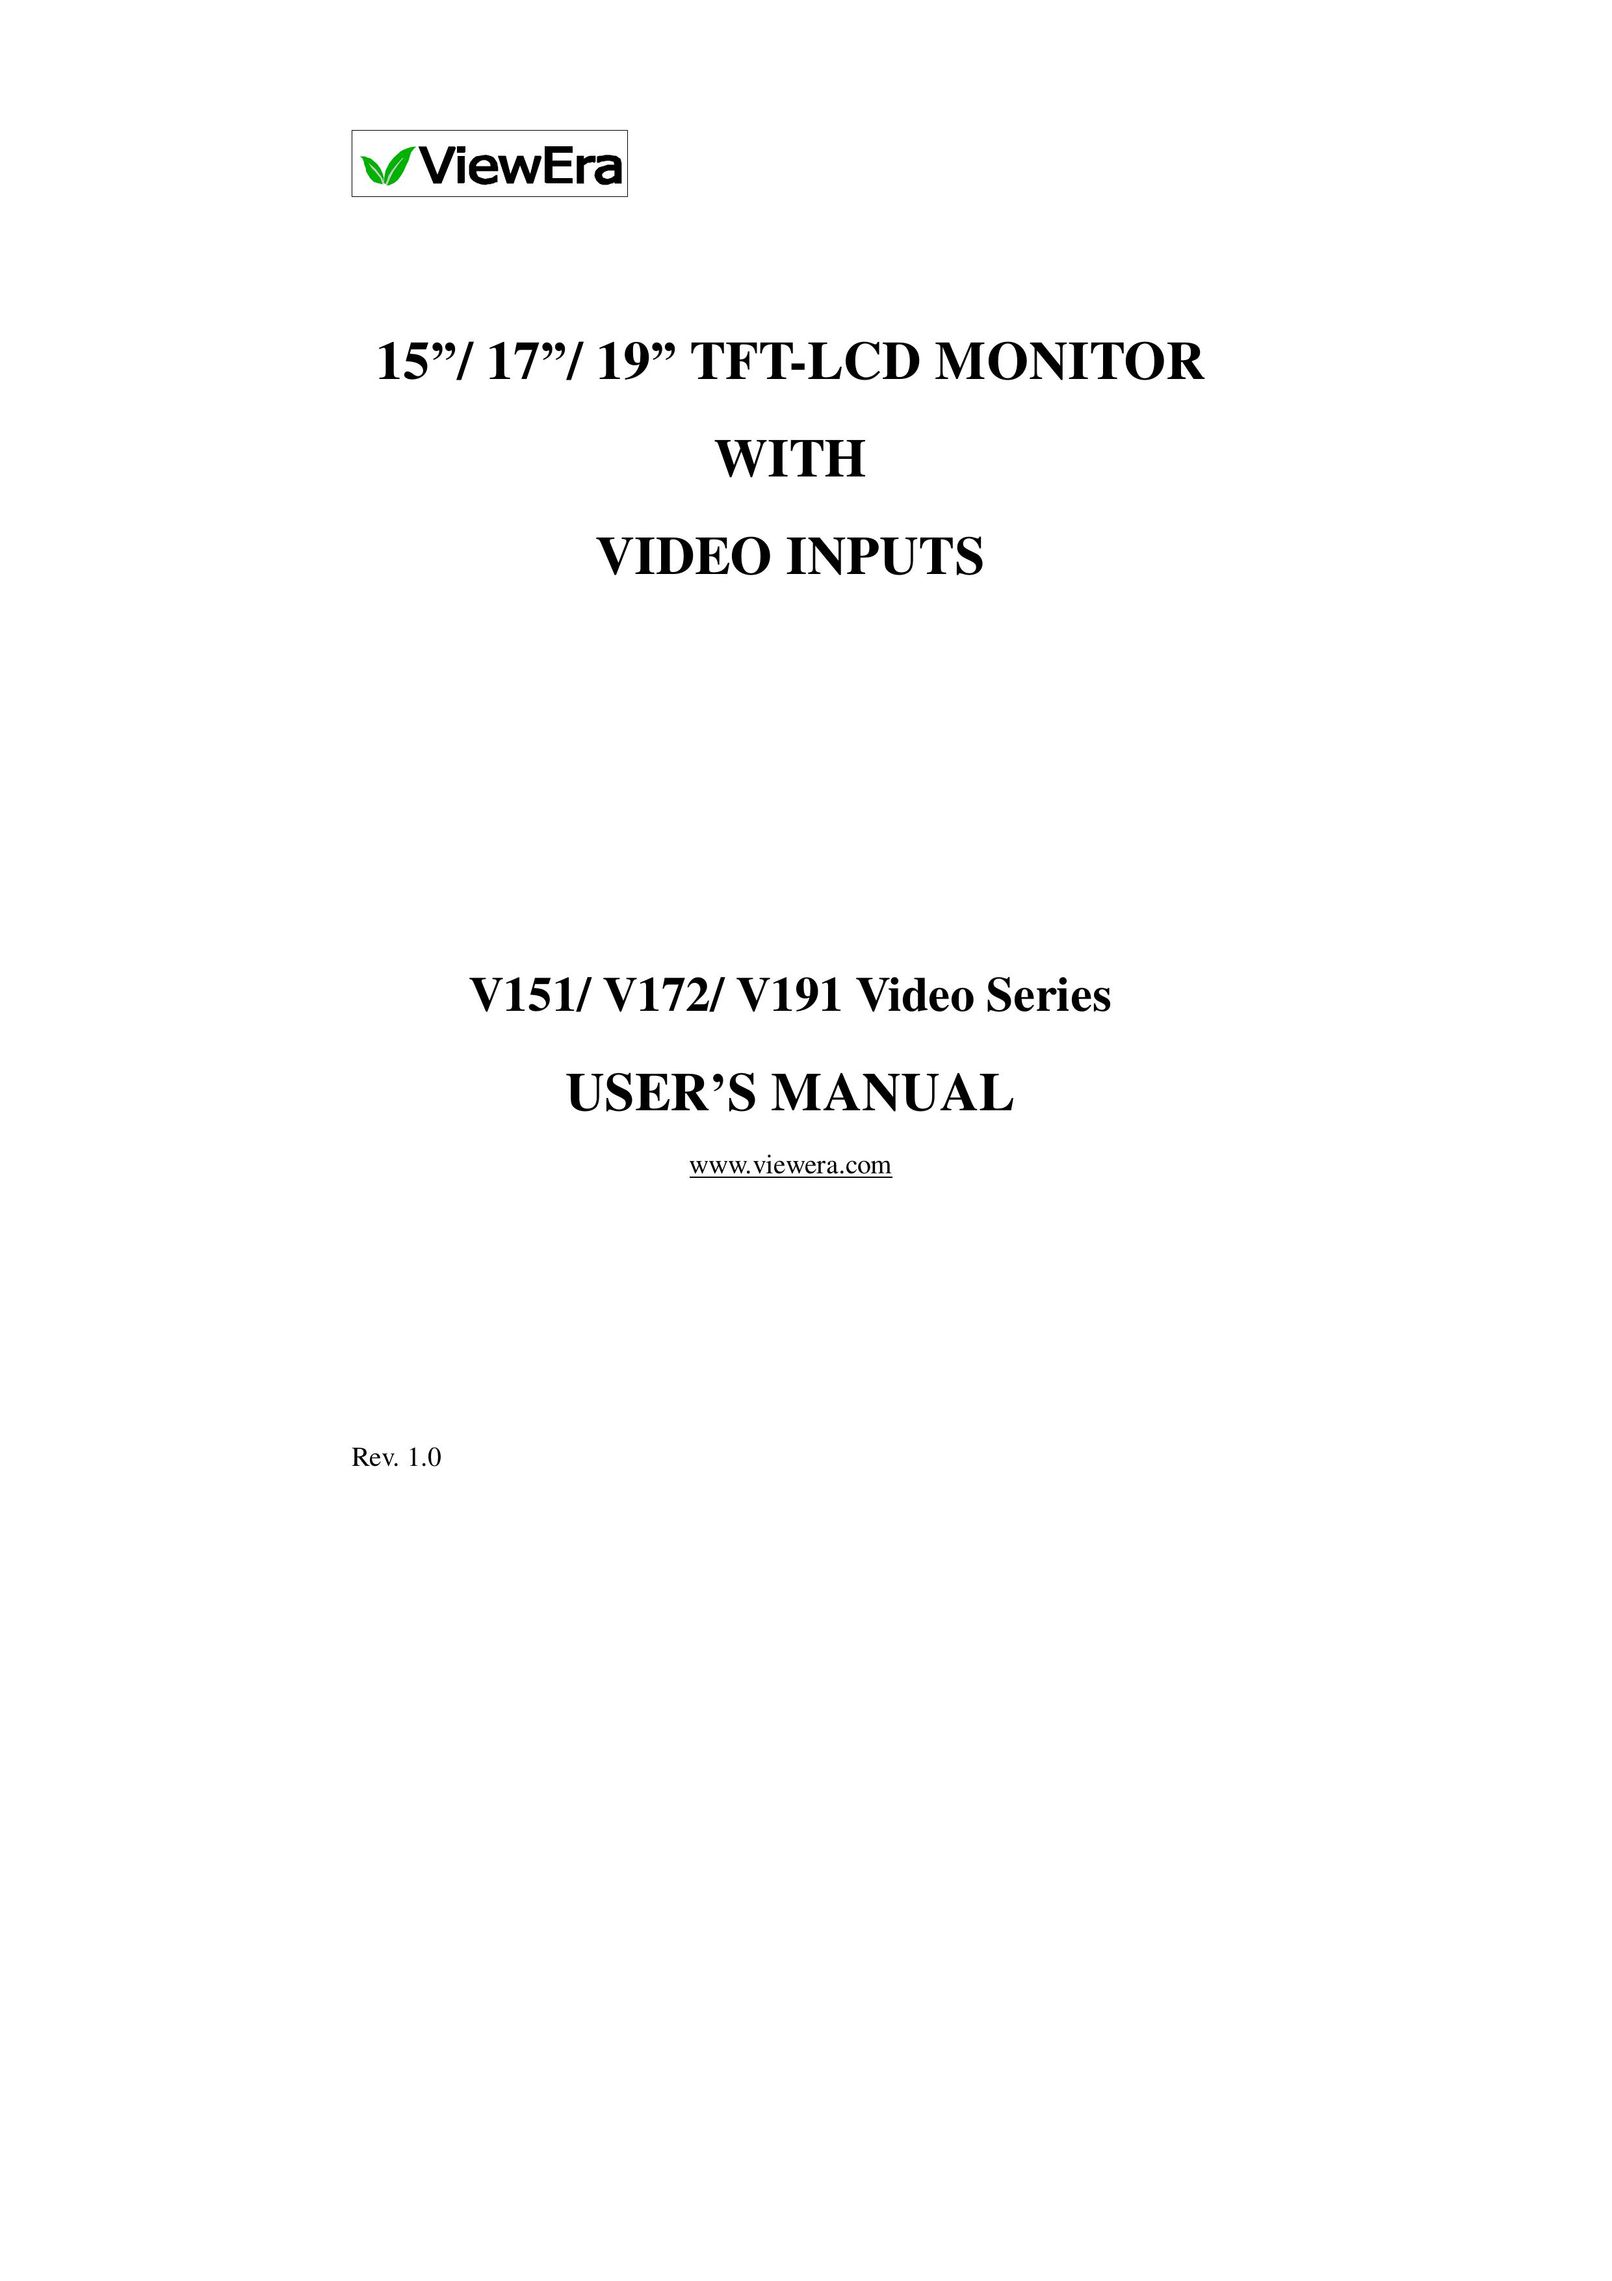 ViewEra V191 Series Computer Monitor User Manual